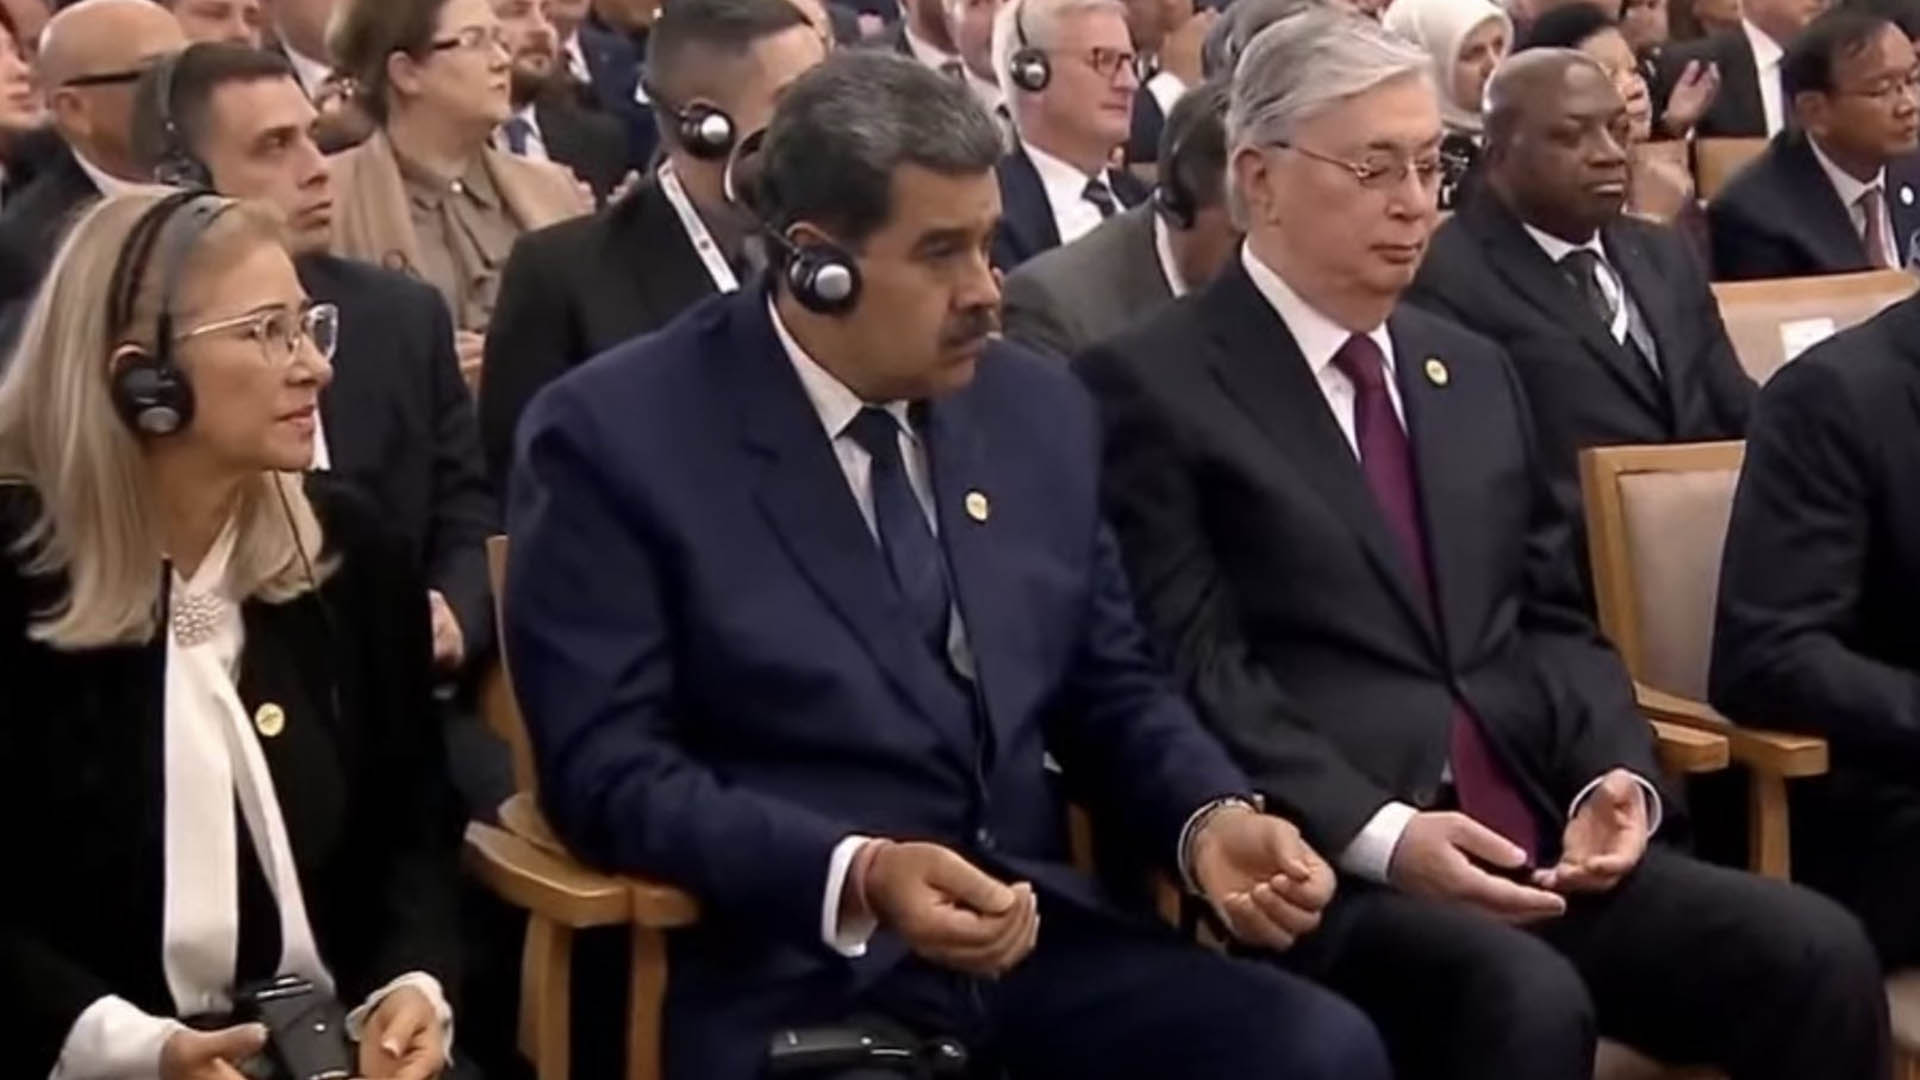 Nicolás Maduro se plegó al rezo musulmán durante la ceremonia de asunción de Erdogan en Turquía